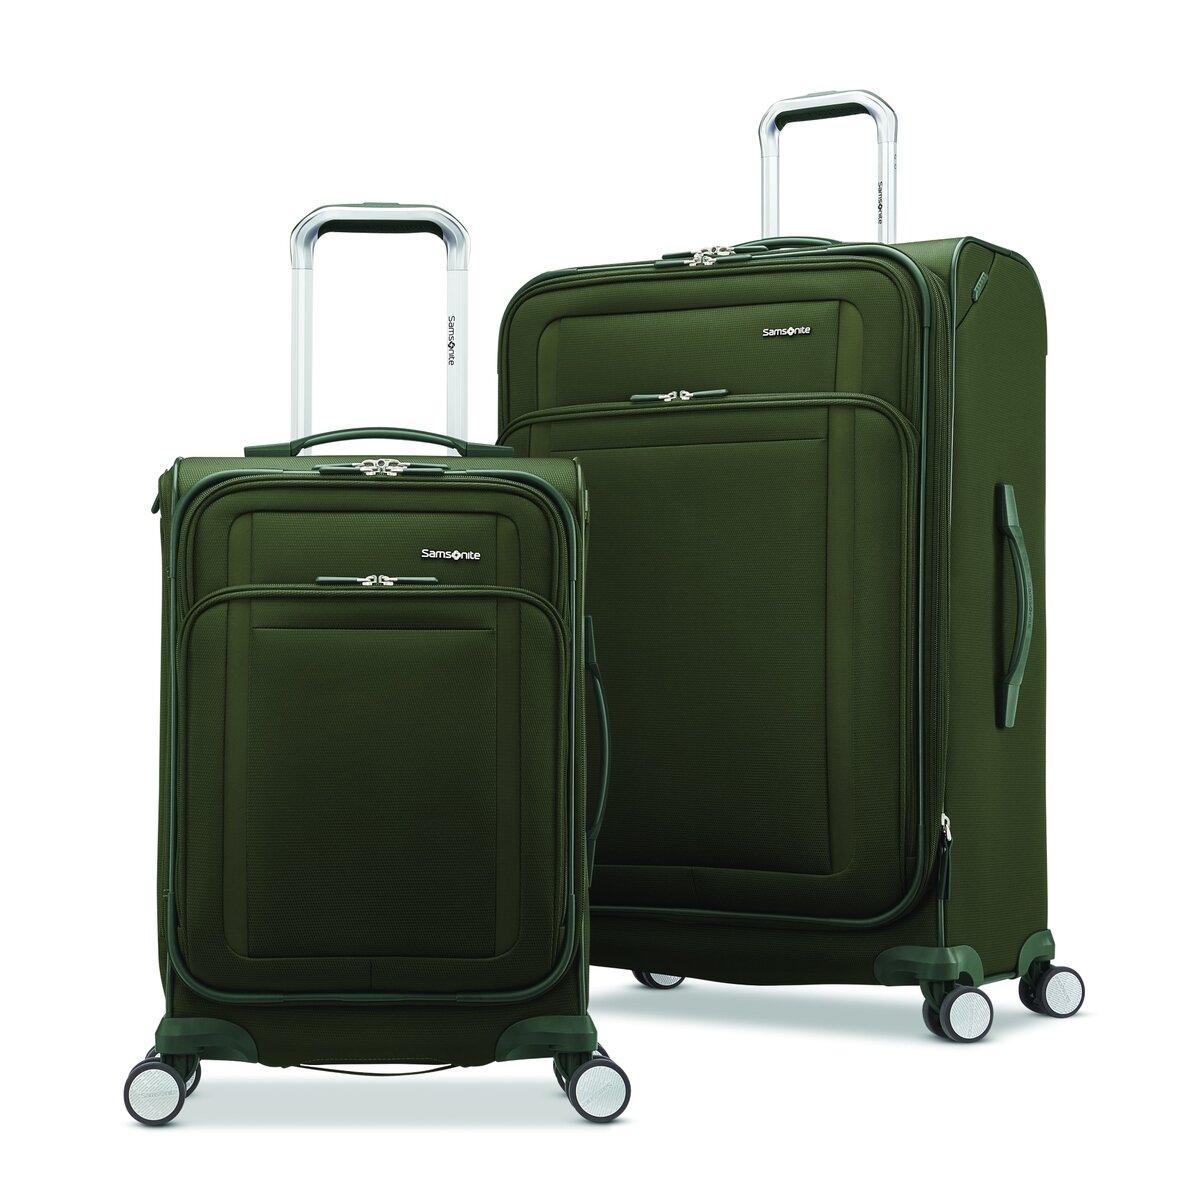 おすすめネット サムソナイト スーツケース 144L サムソナイト超軽大容量スーツケース 新品未使用 超大型 特価 超軽量 4輪 キャリー